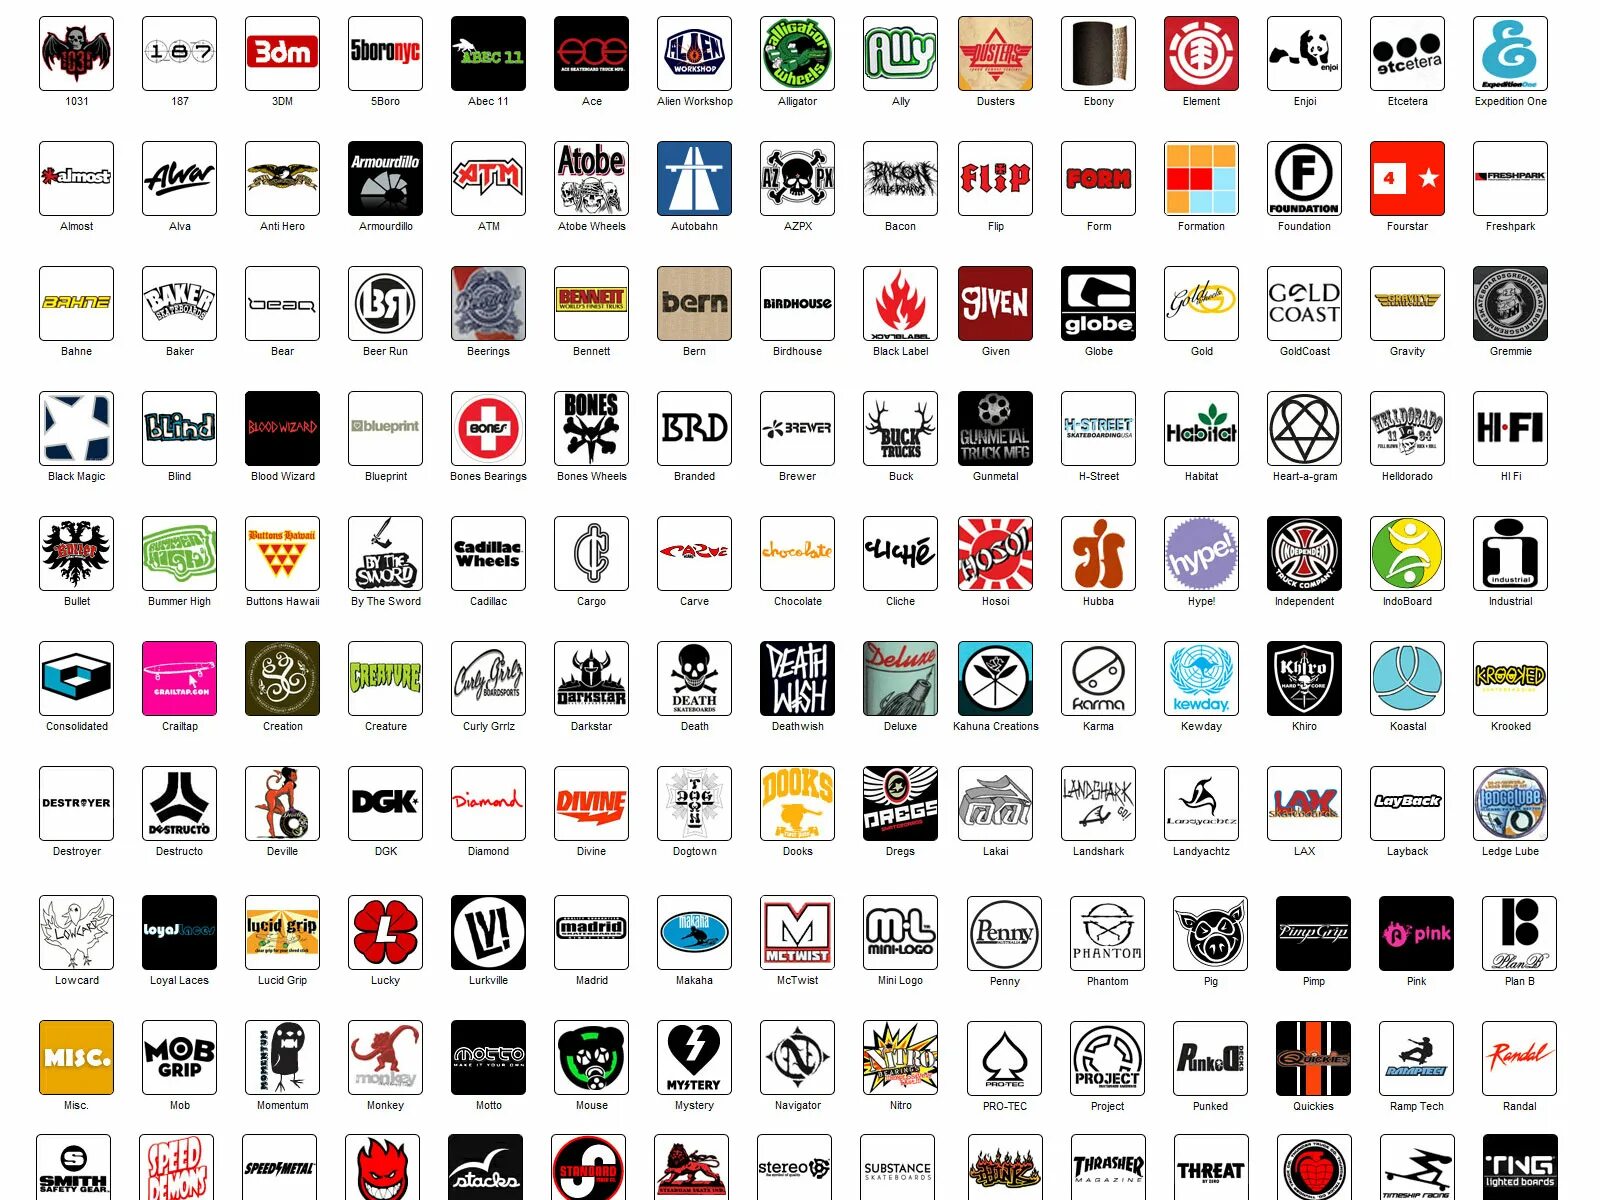 Как называется бренд где. Брендовые логотипы. Эмблемы марок одежды. Логотипы известных брендов. Значки брендов одежды.